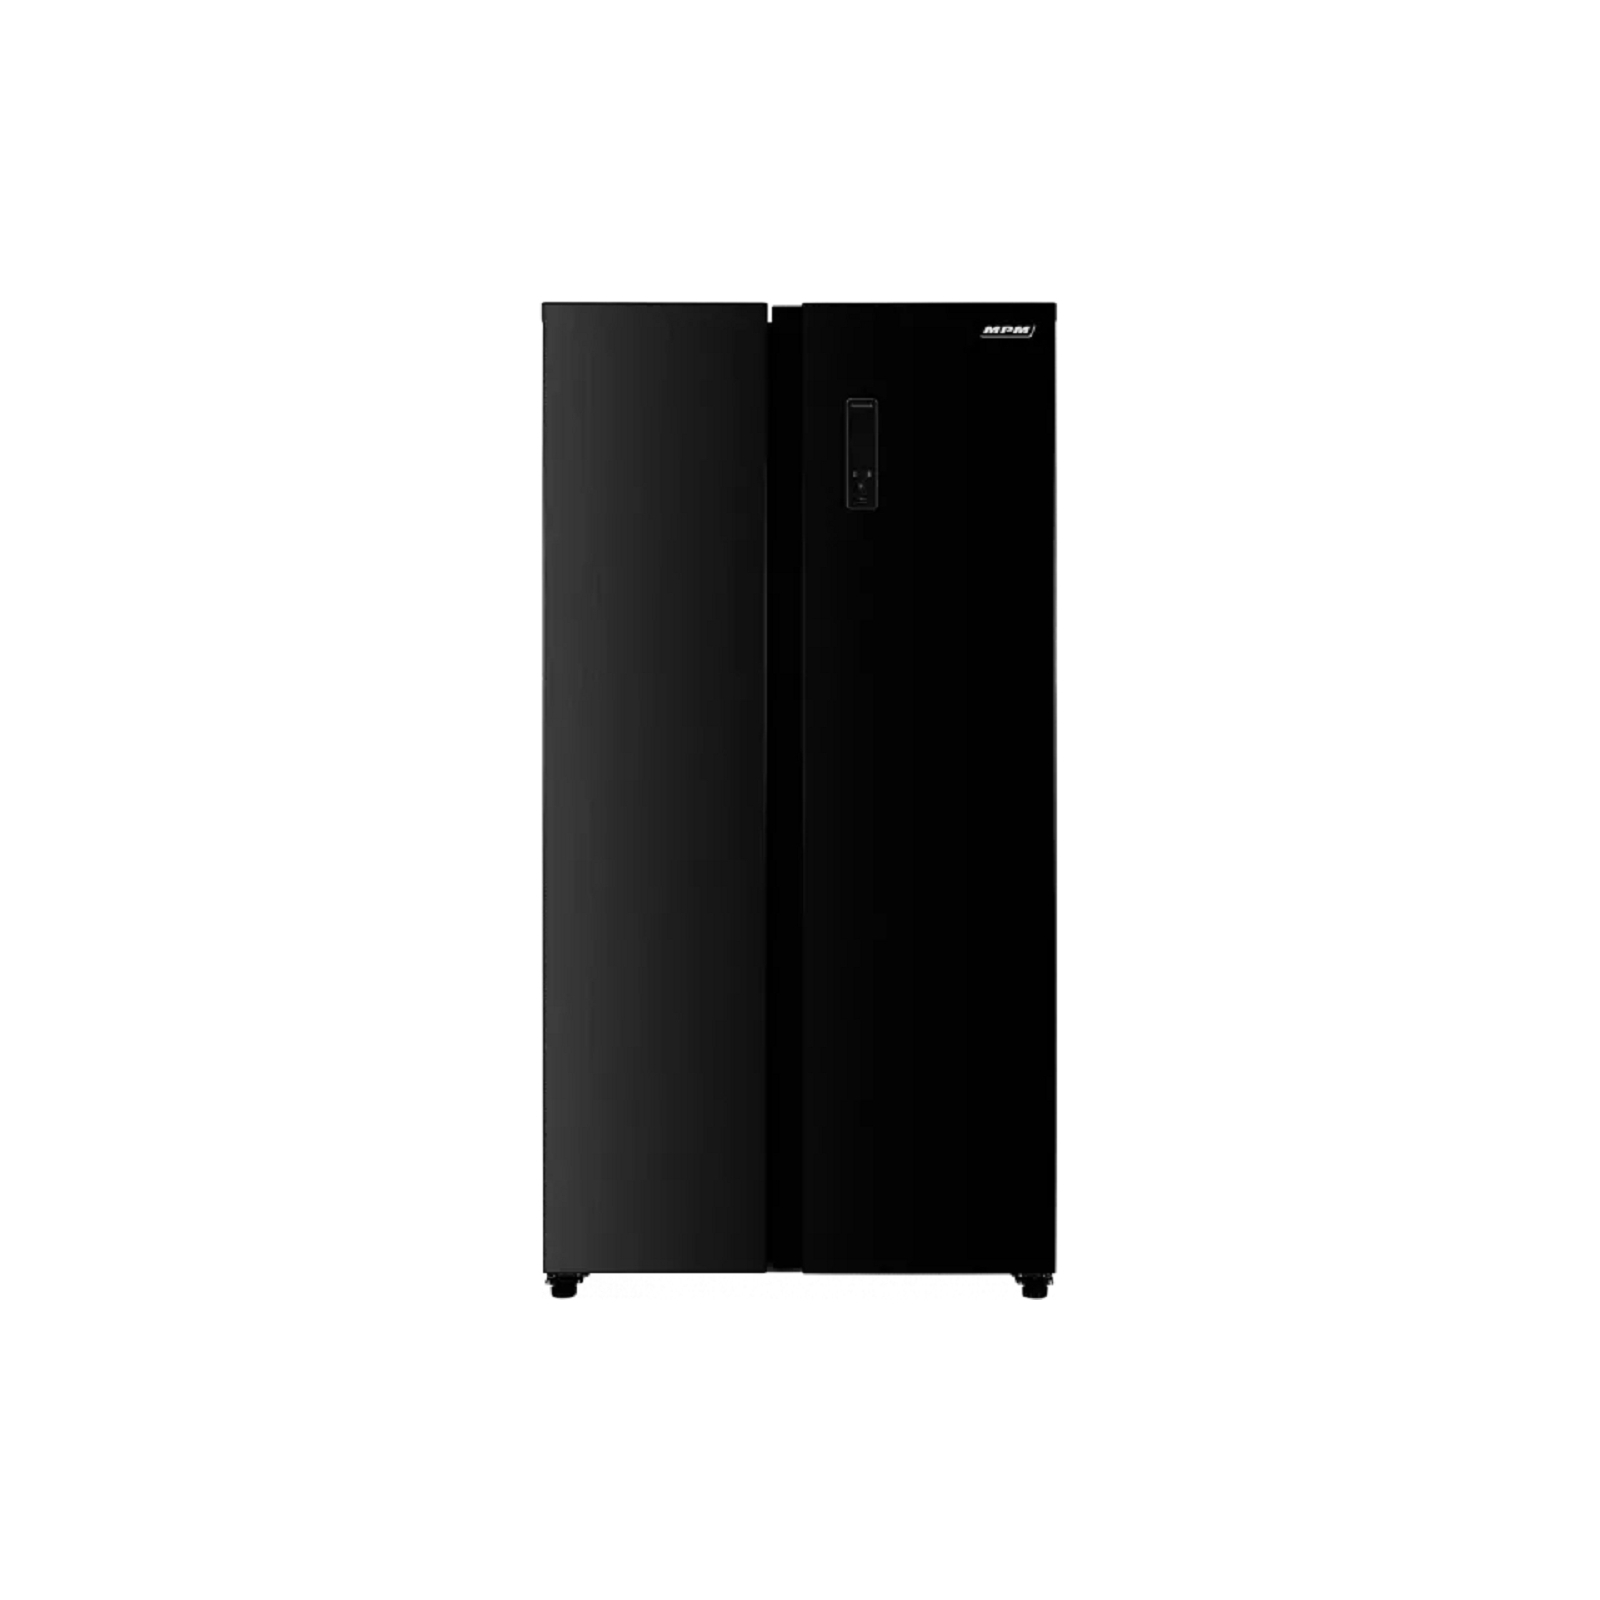 Холодильник MPM MPM-427-SBS-03/N